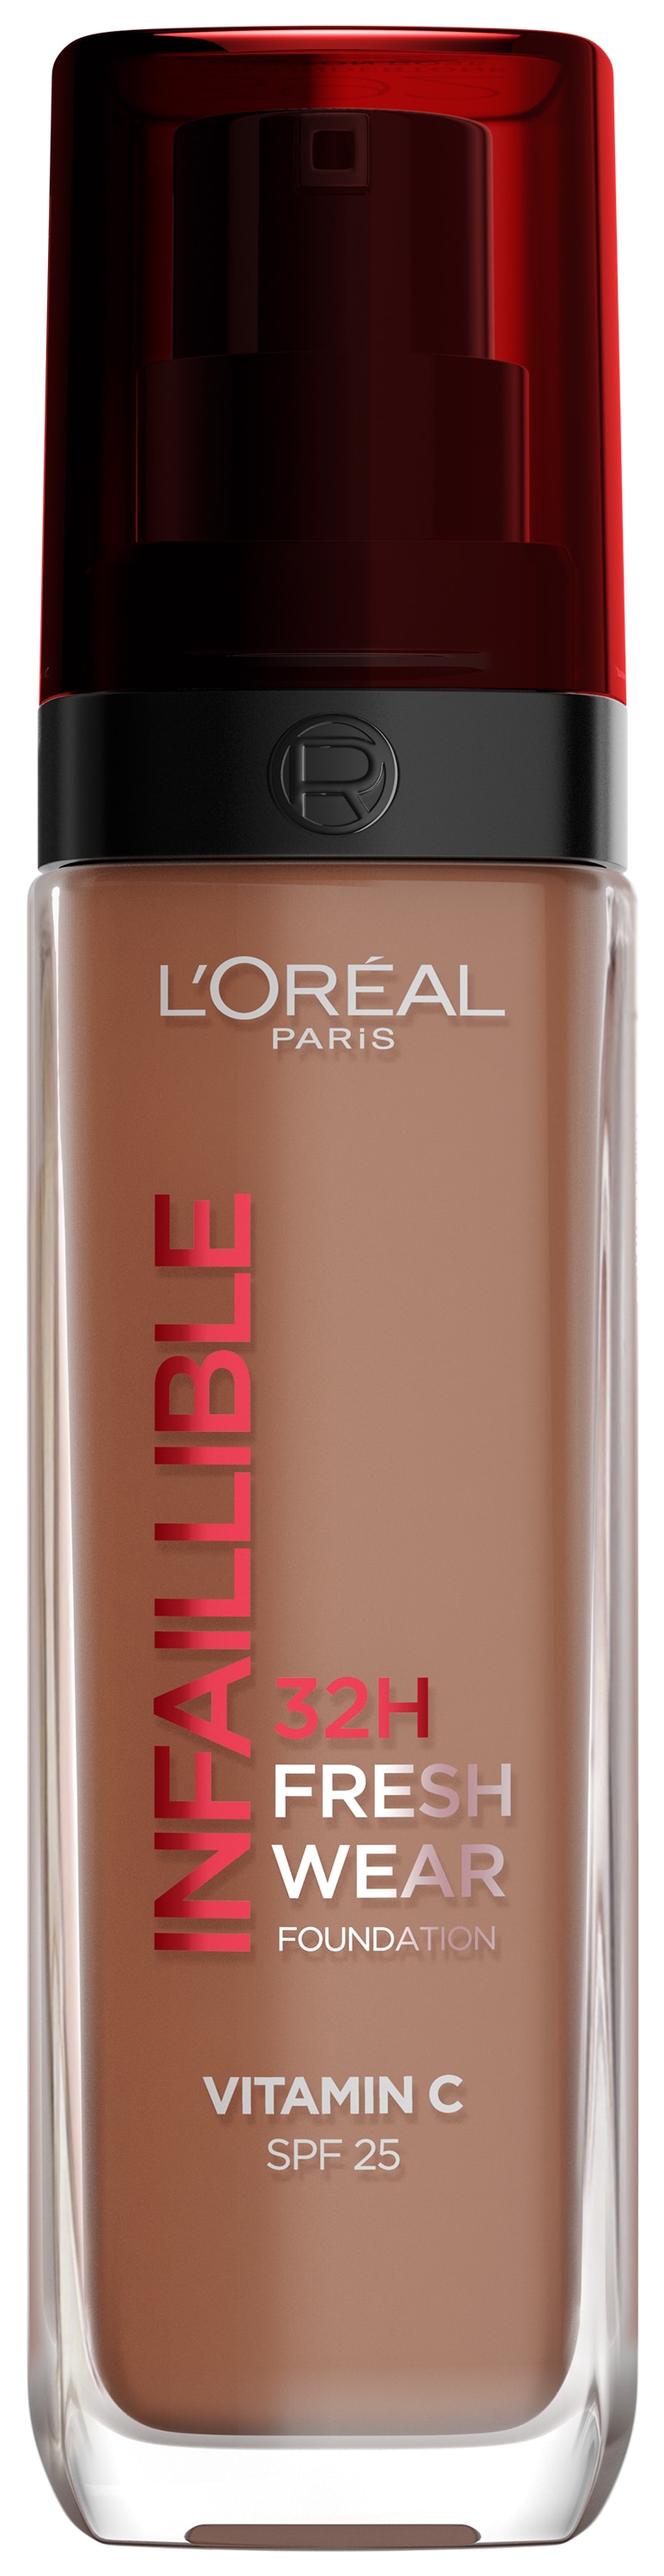 L'ORÉAL PARIS Foundation »L'Oréal Paris Infaillible 32H Fresh Wear Make-up«